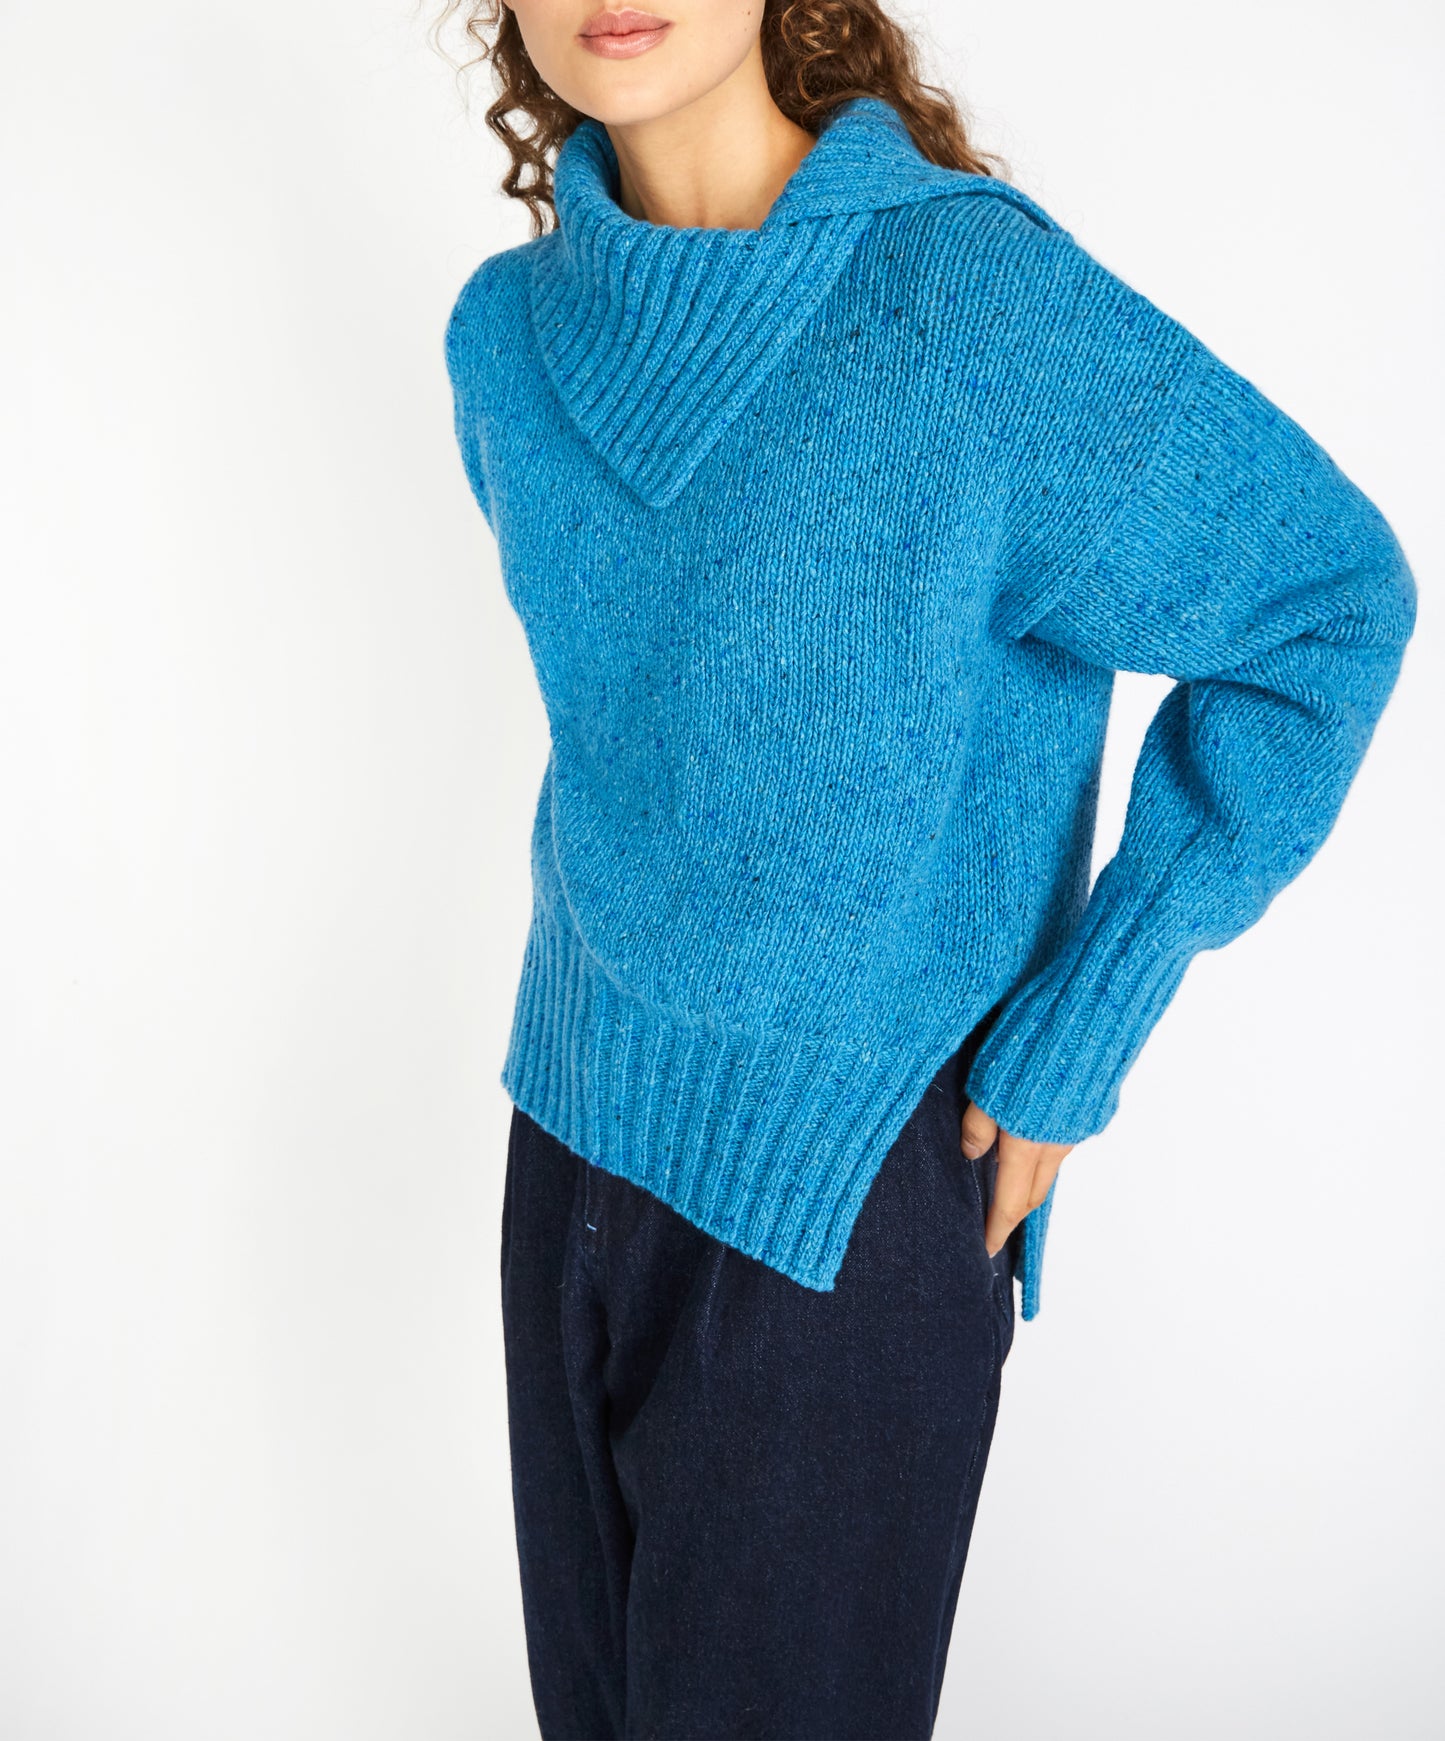 IrelandsEye Knitwear Wilde Slouchy Funnel Neck Sweater Forget-Me-Not Blue